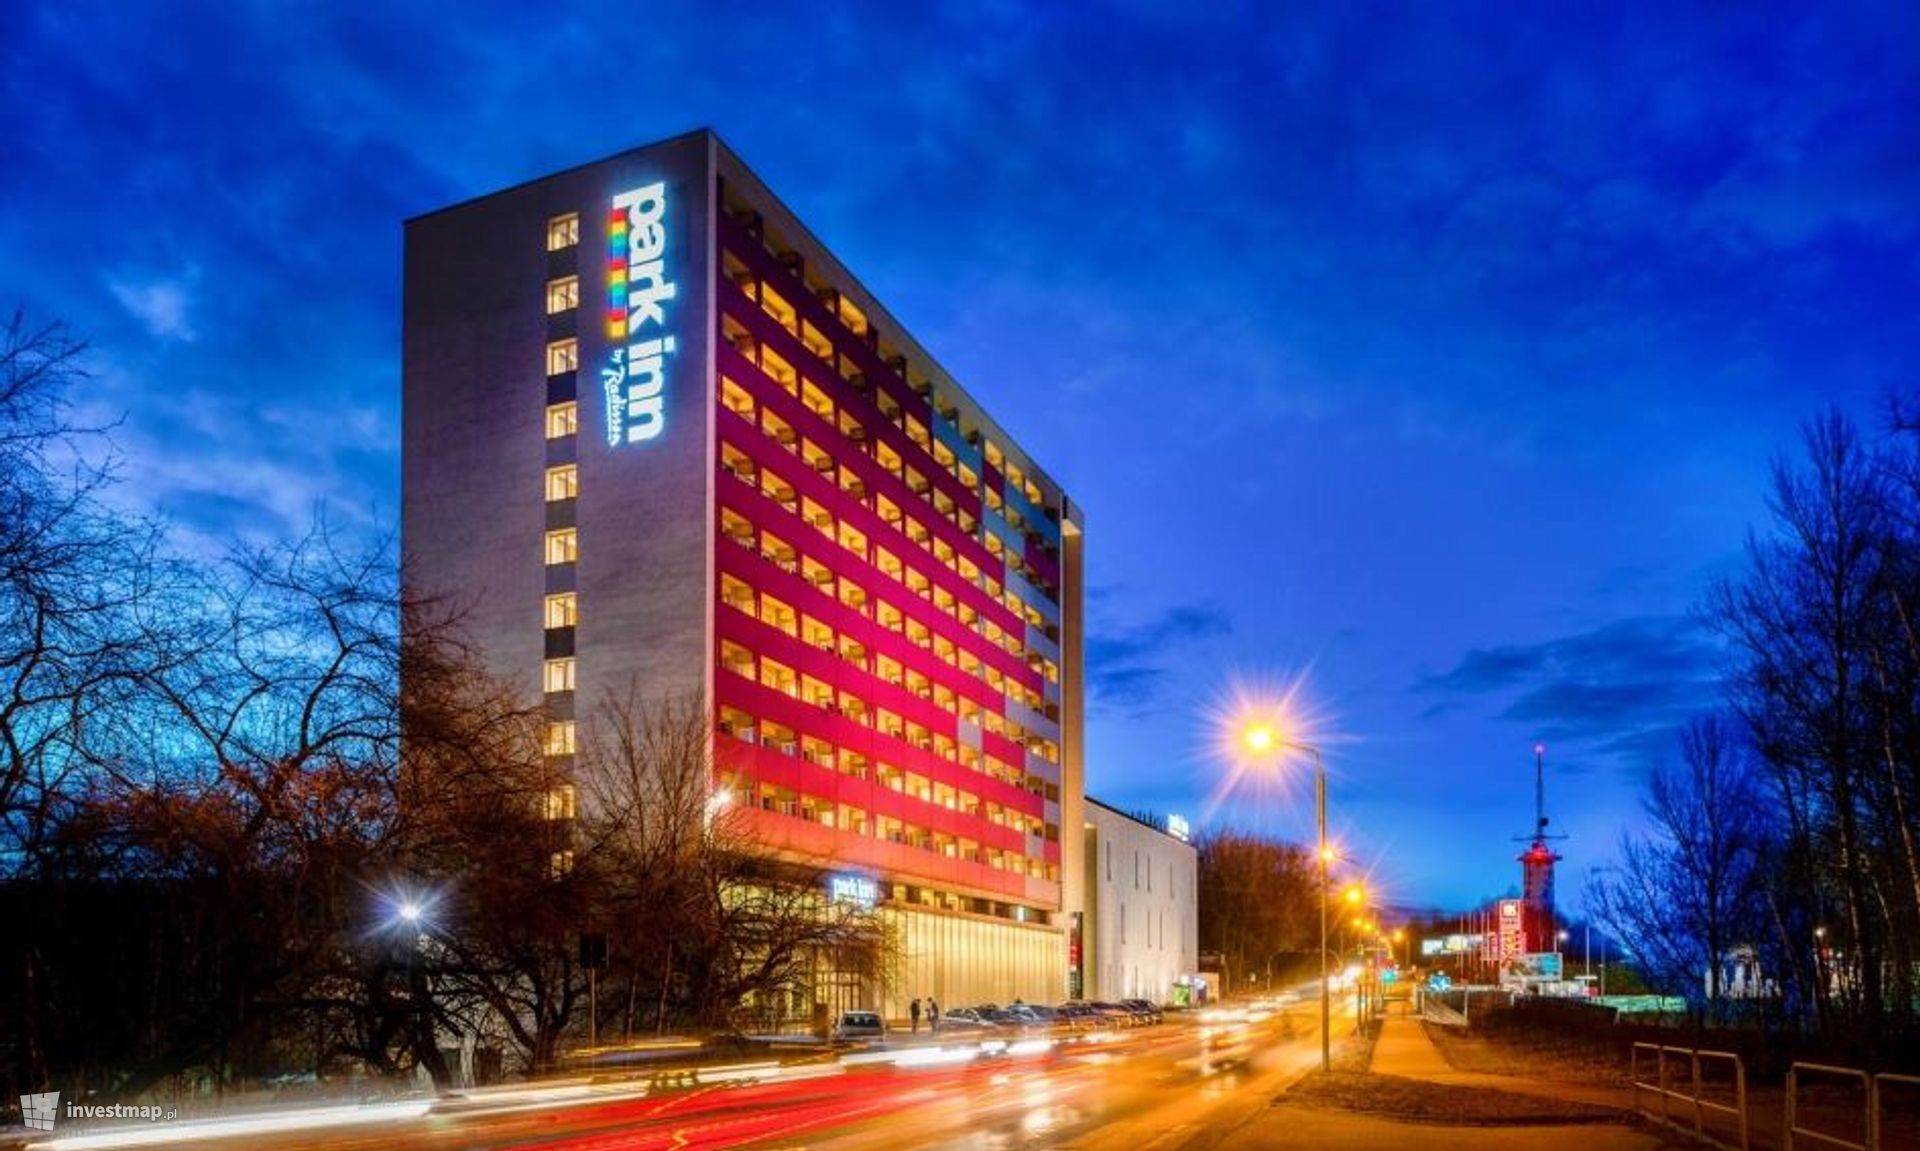 Duży, 4-gwiazdkowy hotel w Katowicach wychodzi ze znanej sieci i zmienia nazwę